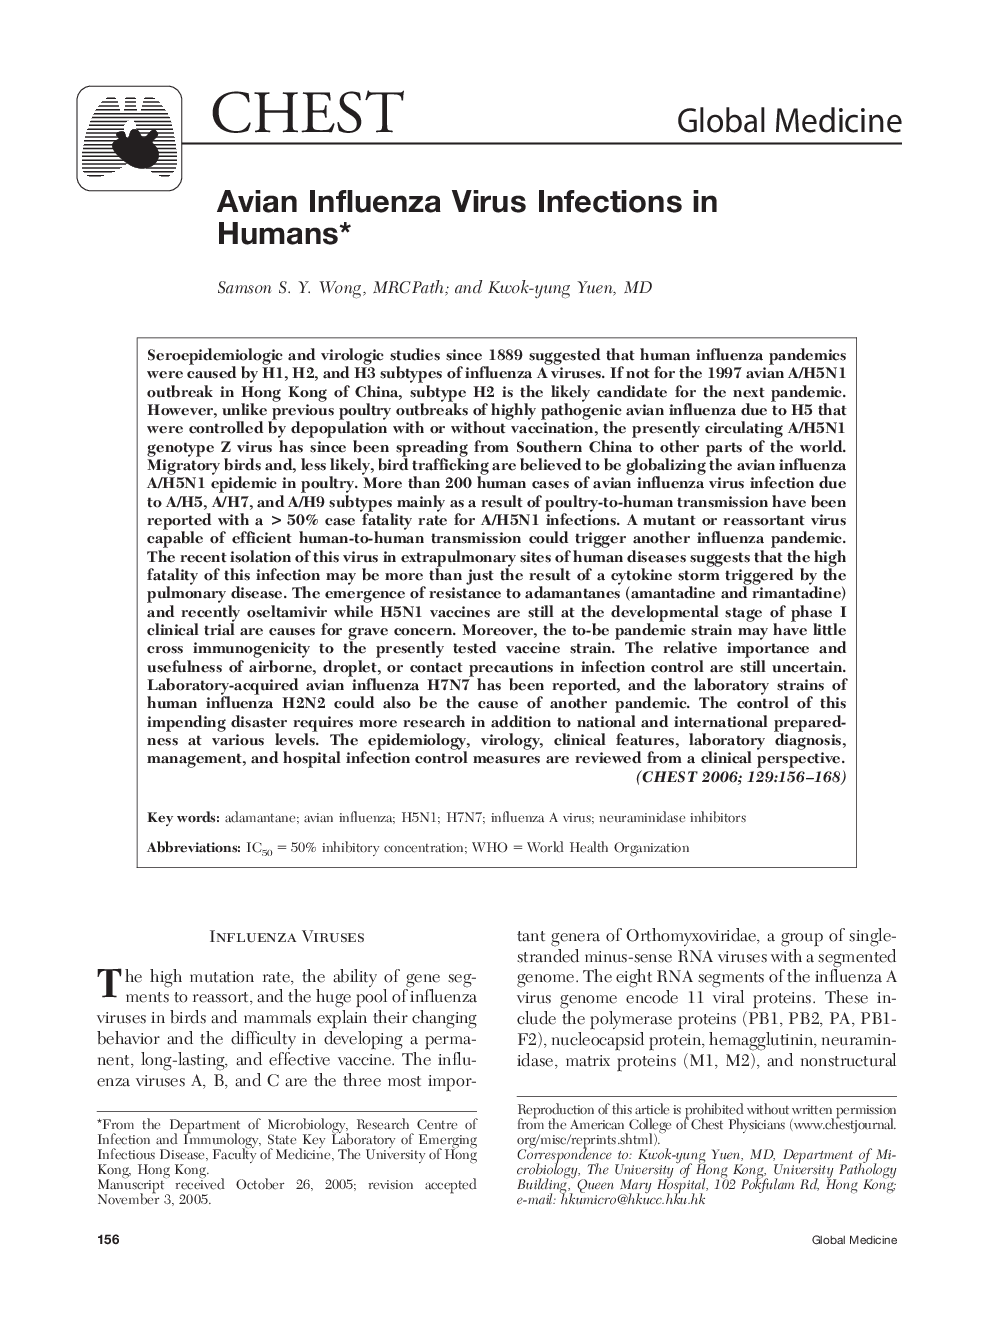 Avian Influenza Virus Infections in Humans 